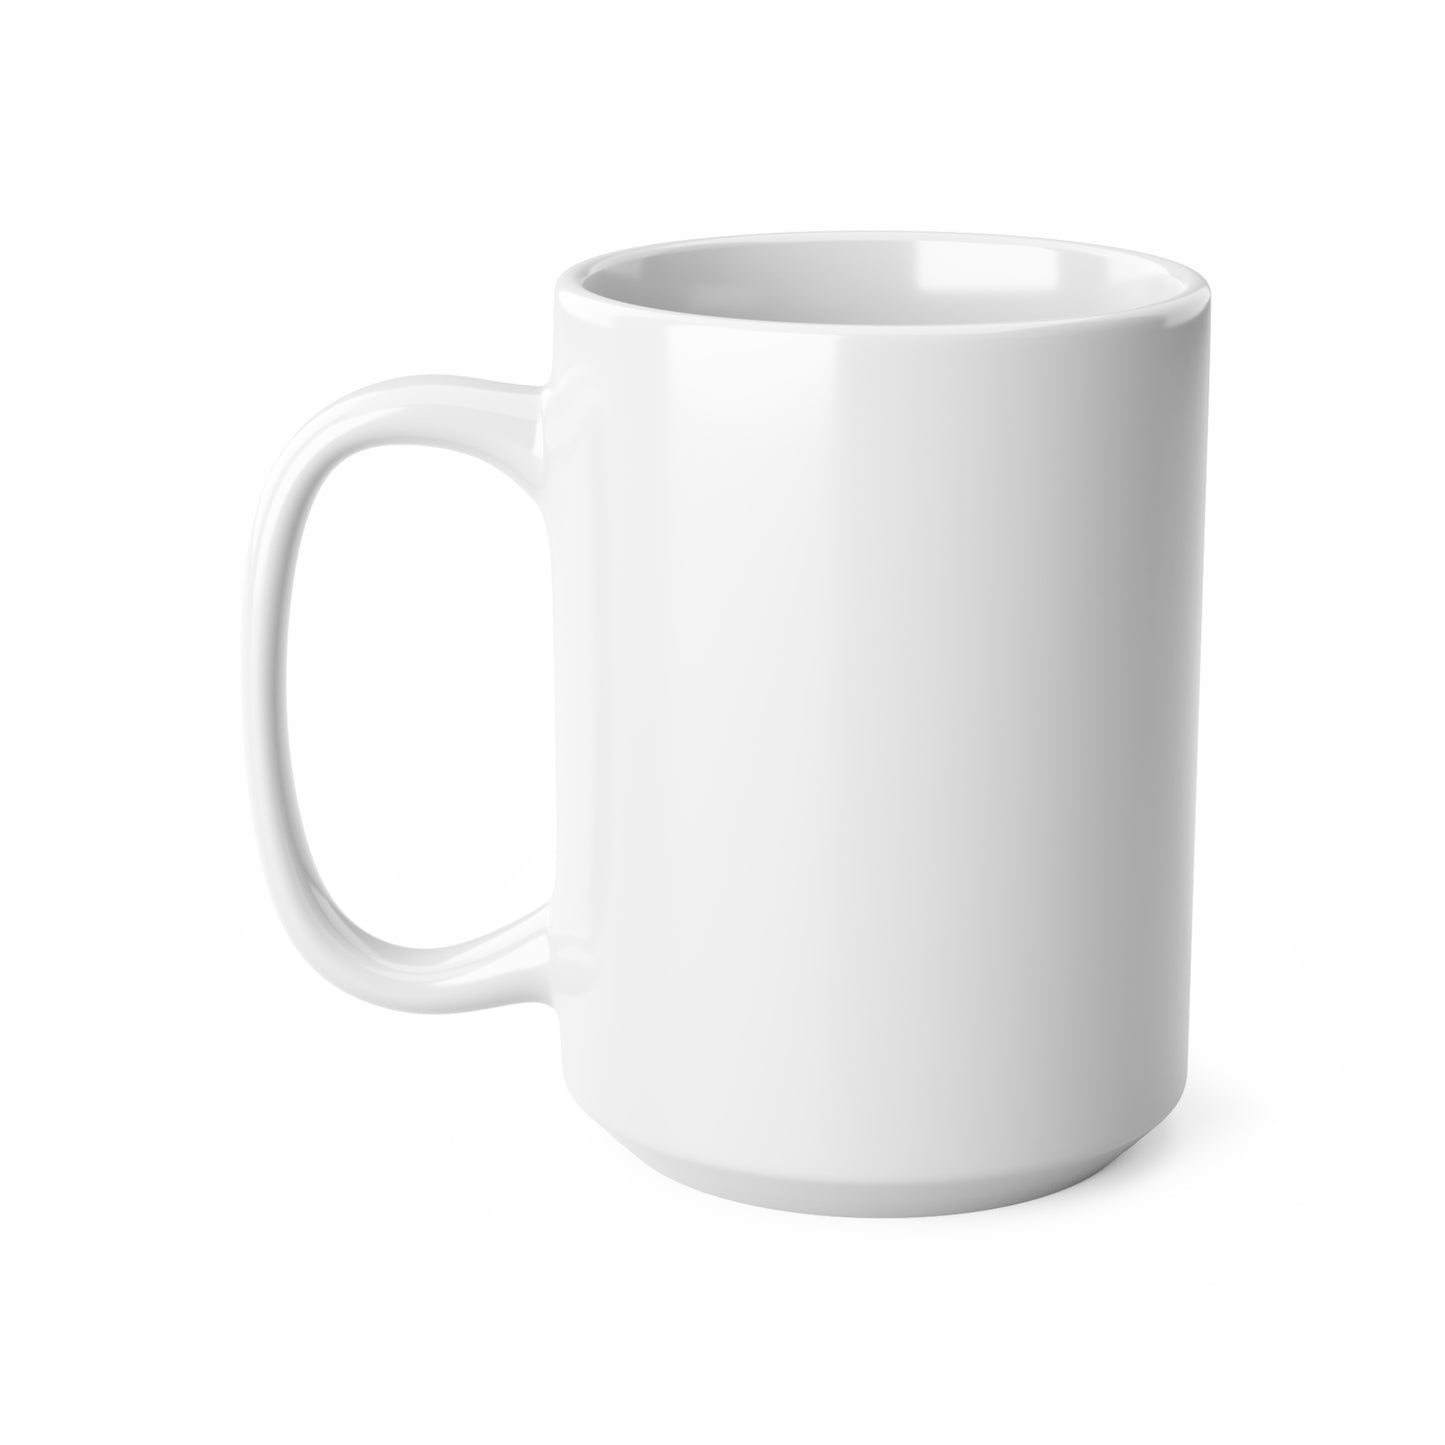 India word mug, local mug, geography mug, gift, mug, coffee cup, word mug, wordcloud mug, christmas gift, birthday gift